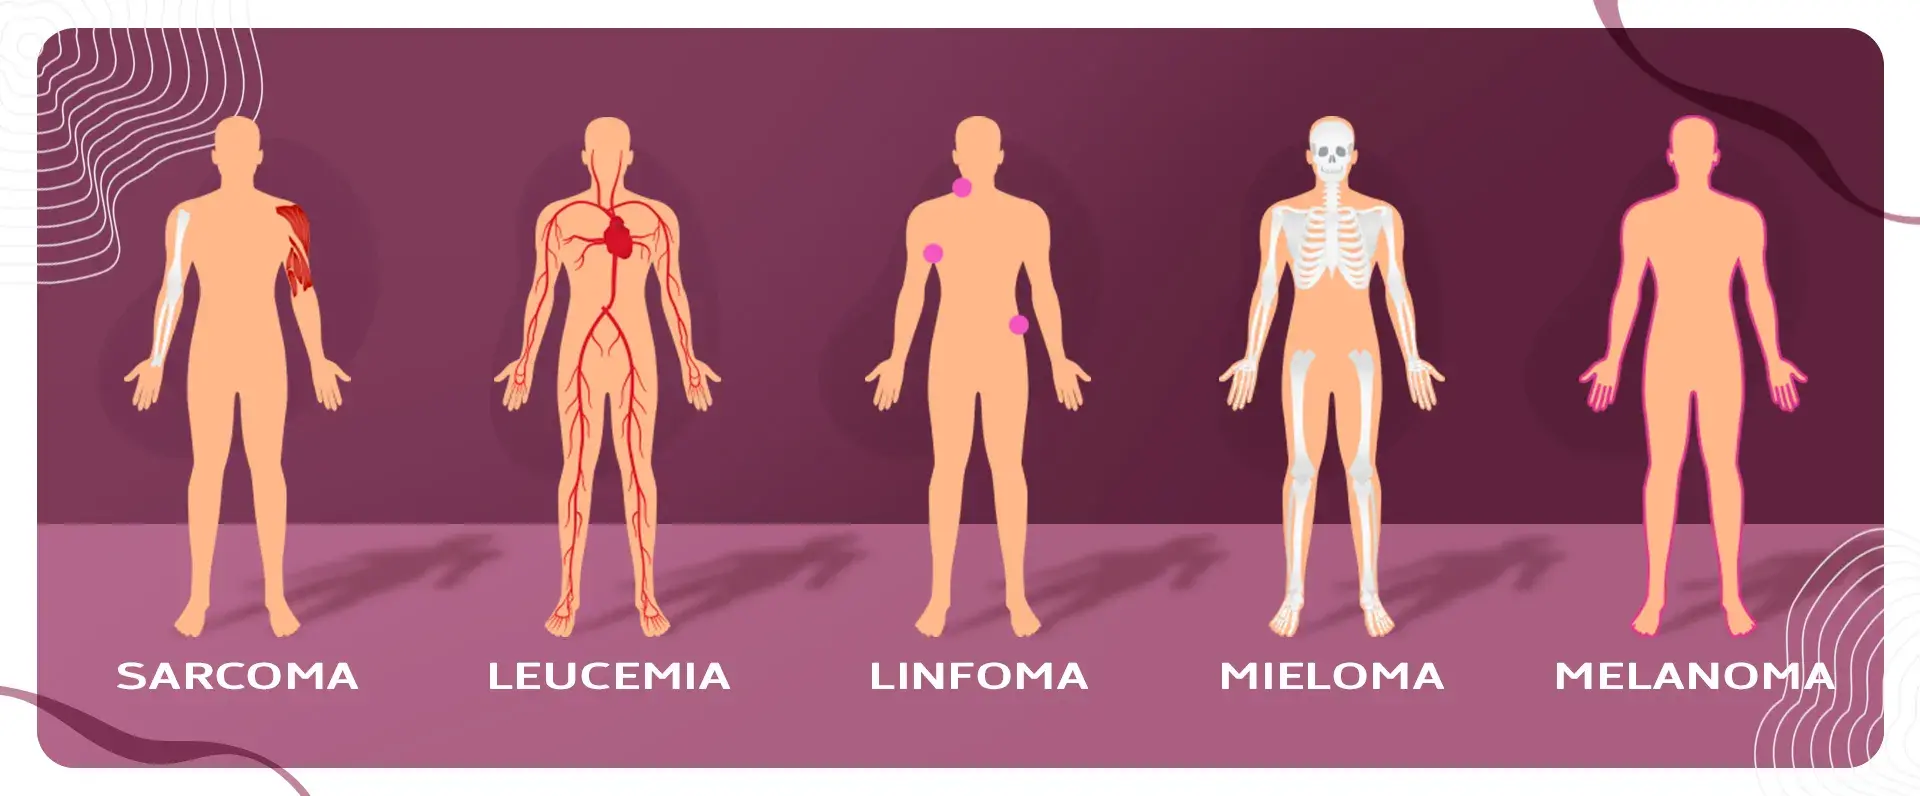 El cáncer es considerado como un grupo de enfermedades porque se da en varias partes del cuerpo.s